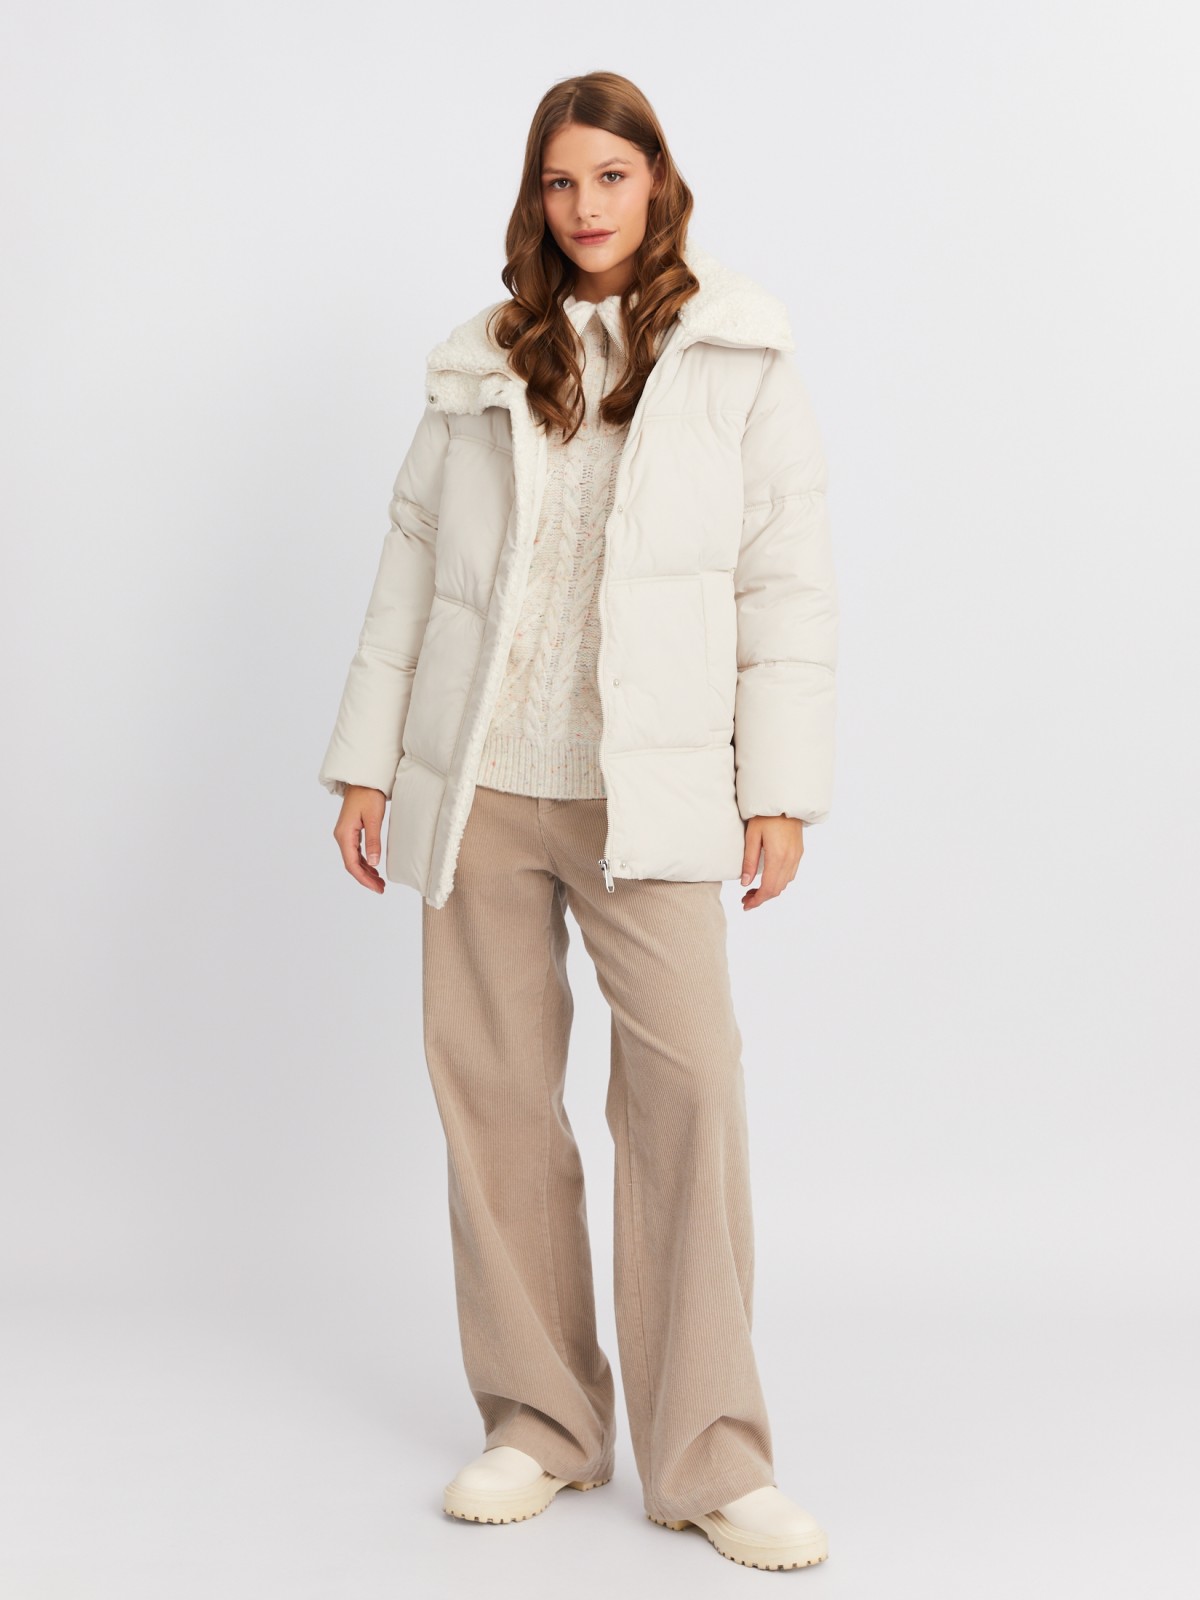 Тёплая стёганая куртка с воротником-стойкой и отделкой из экомеха zolla 023425102044, цвет молоко, размер XS - фото 2